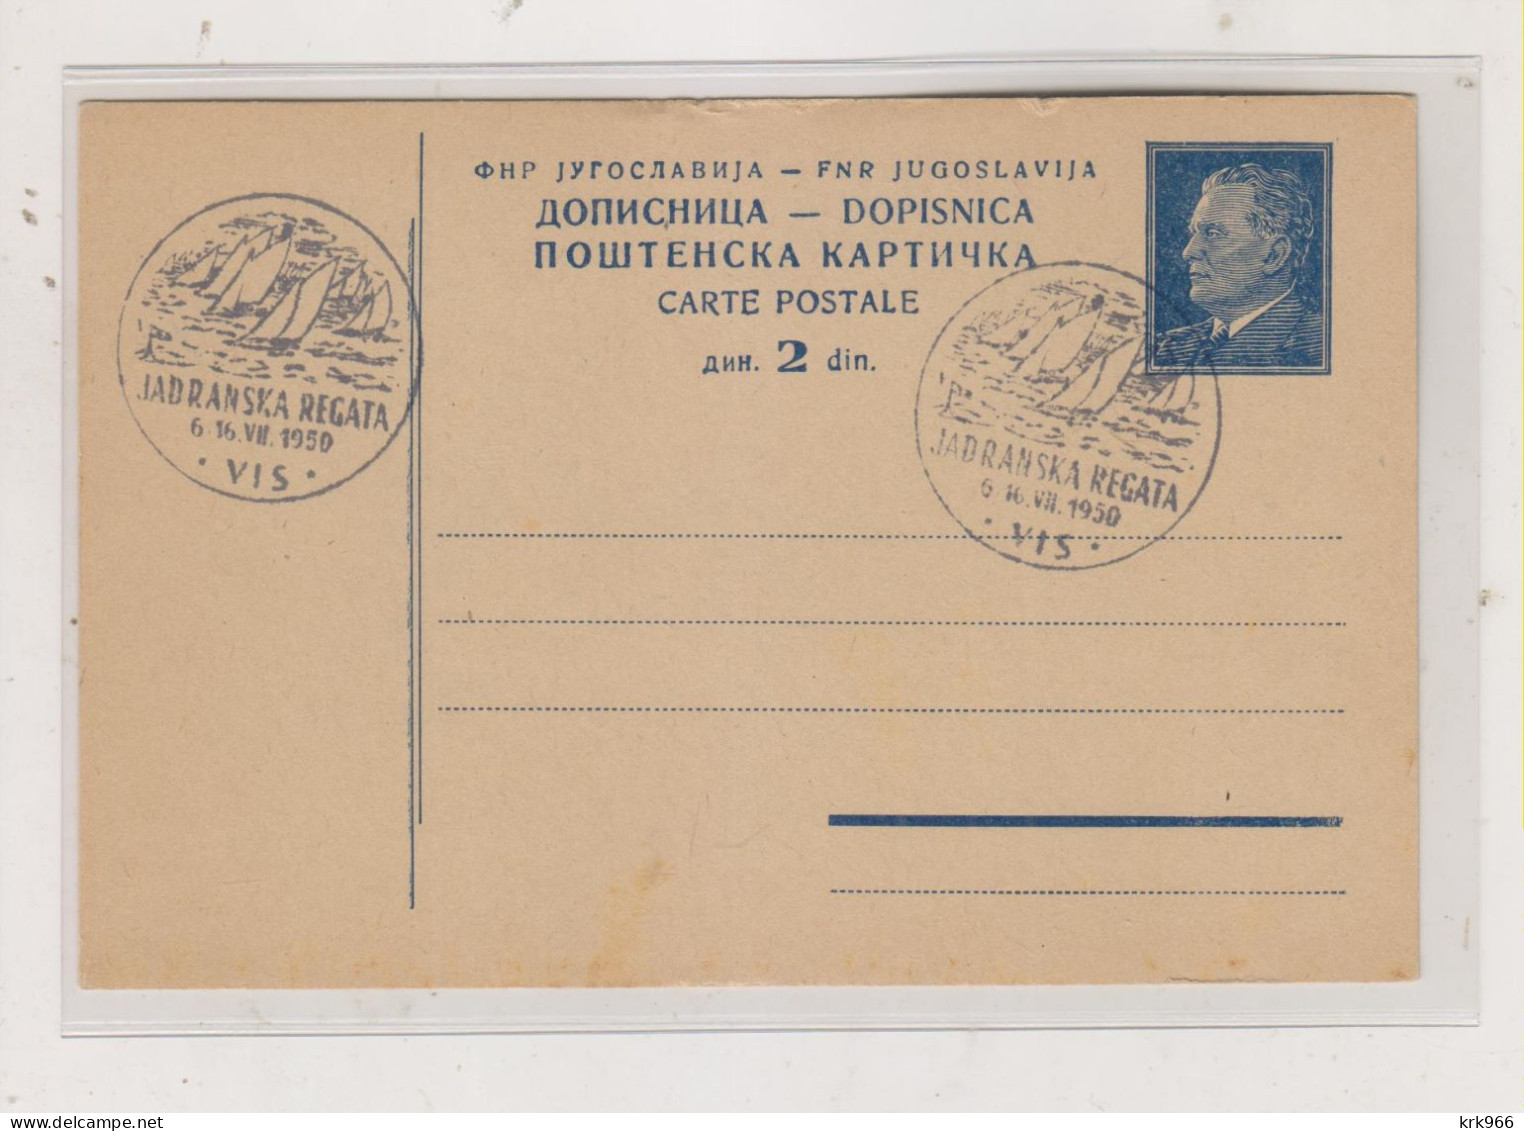 YUGOSLAVIA,1950  VIS Nice Postal Stationery - Briefe U. Dokumente